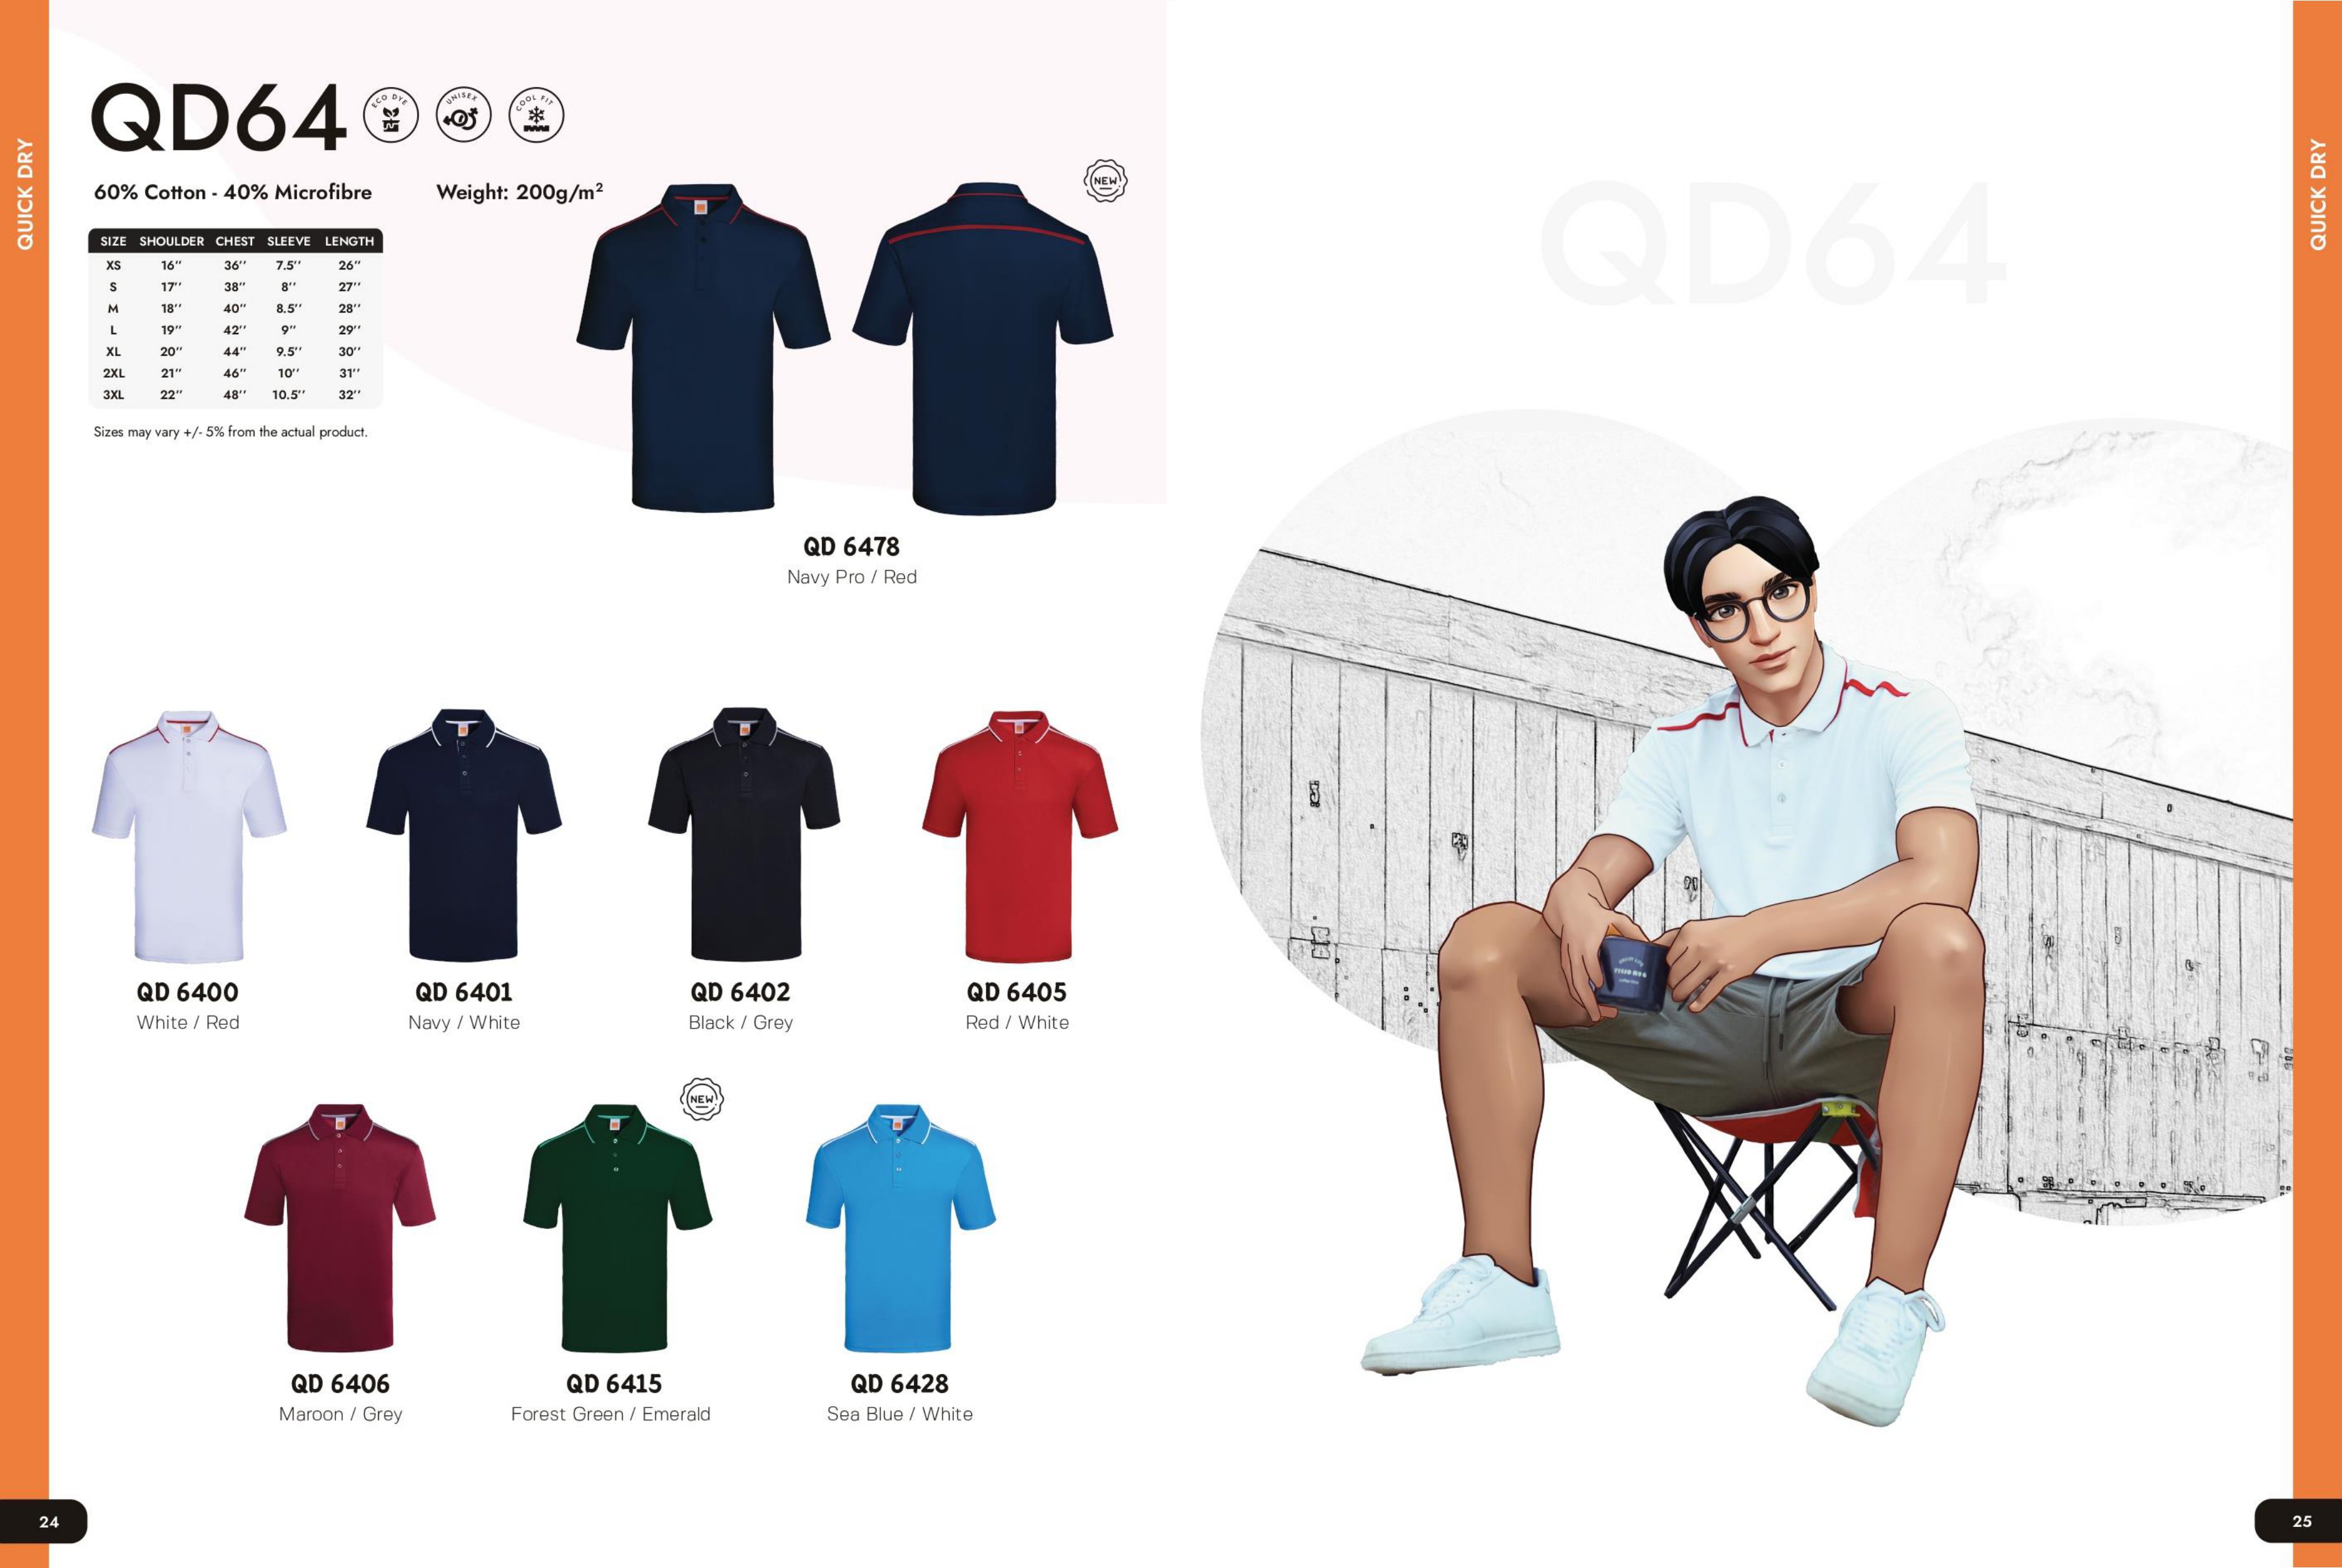 QD 6406 - Malaysia Custom Uniform & T-shirt